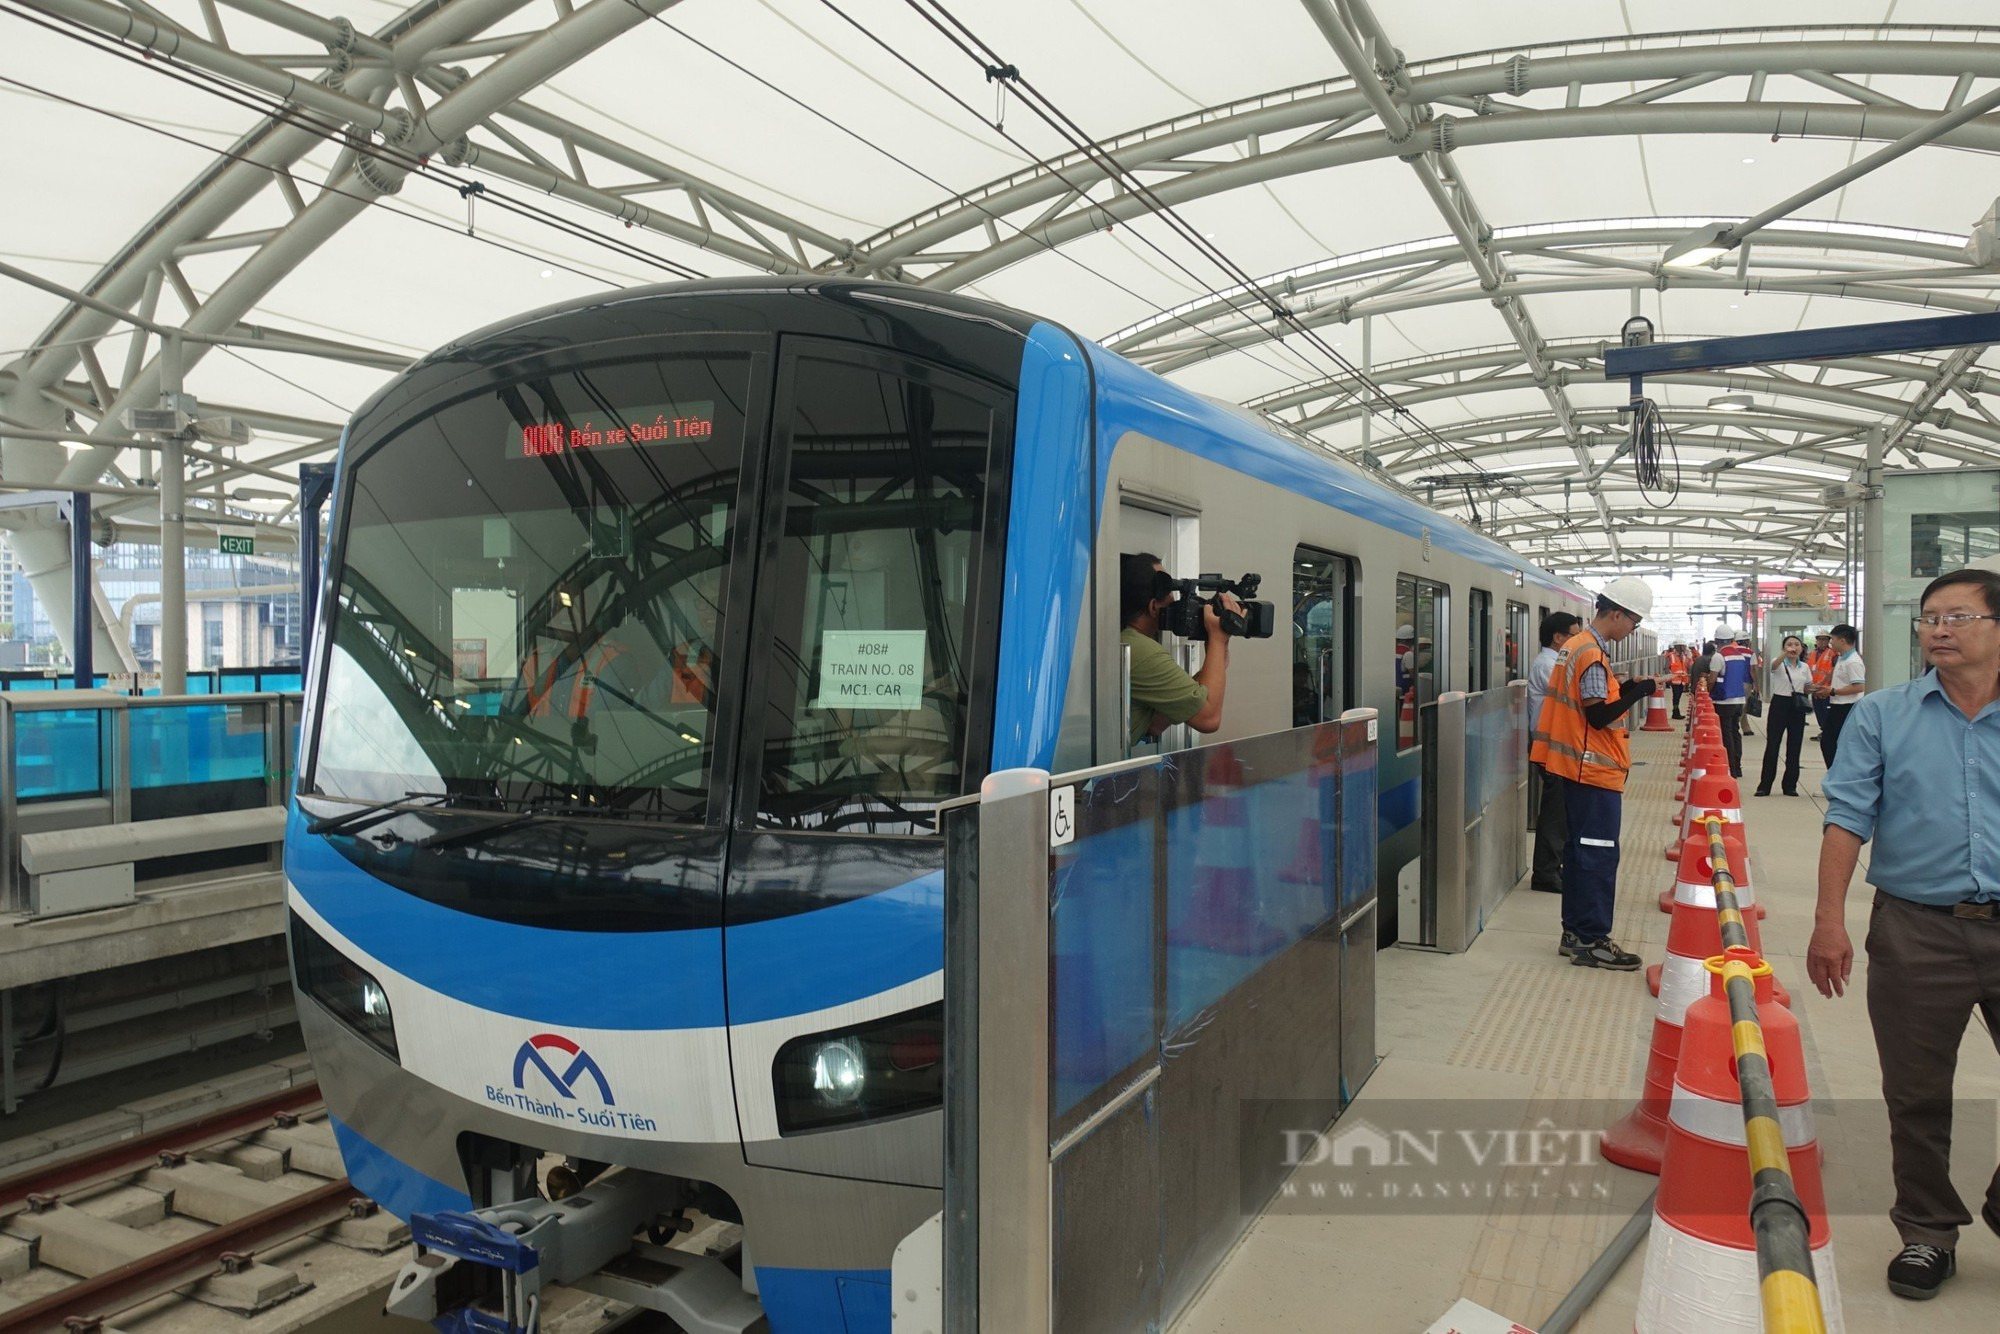 Chiêm ngưỡng đoàn tàu Metro Bến Thành - Suối Tiên chạy thử nghiệm toàn tuyến - Ảnh 3.